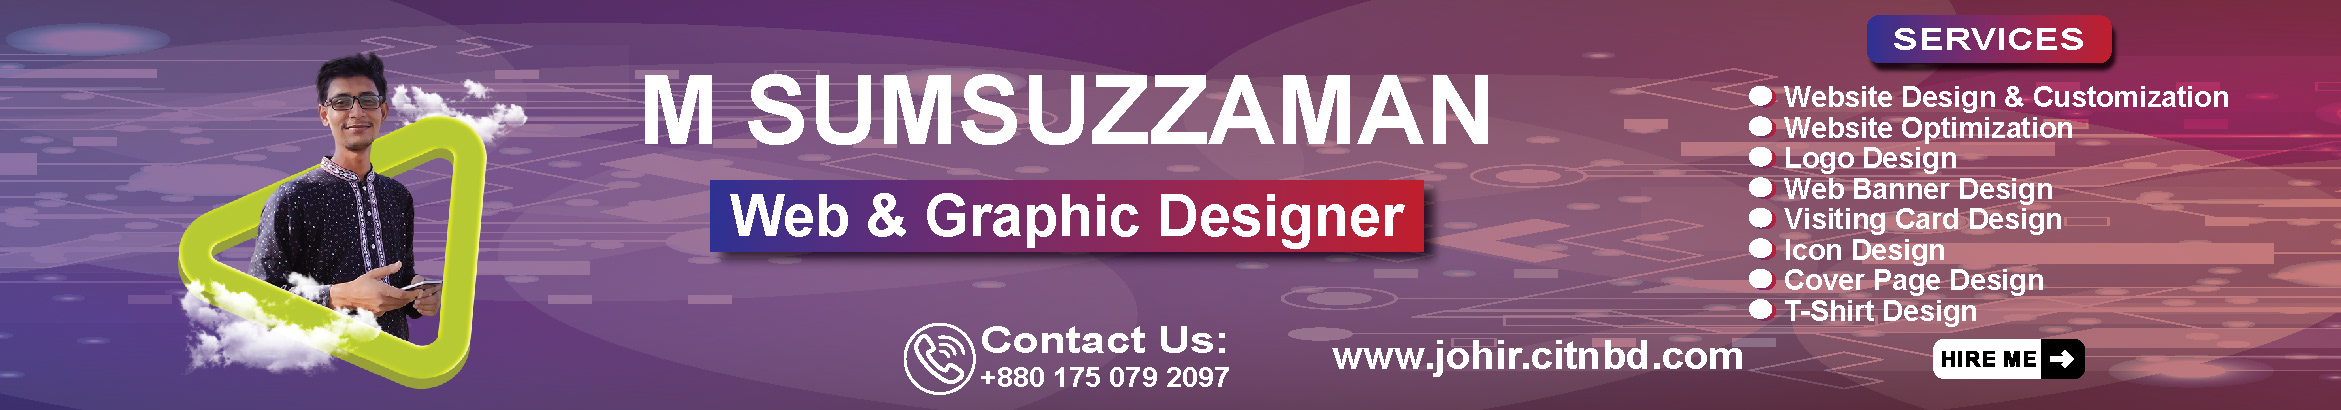 M SUMSUZZAMAN's profile banner